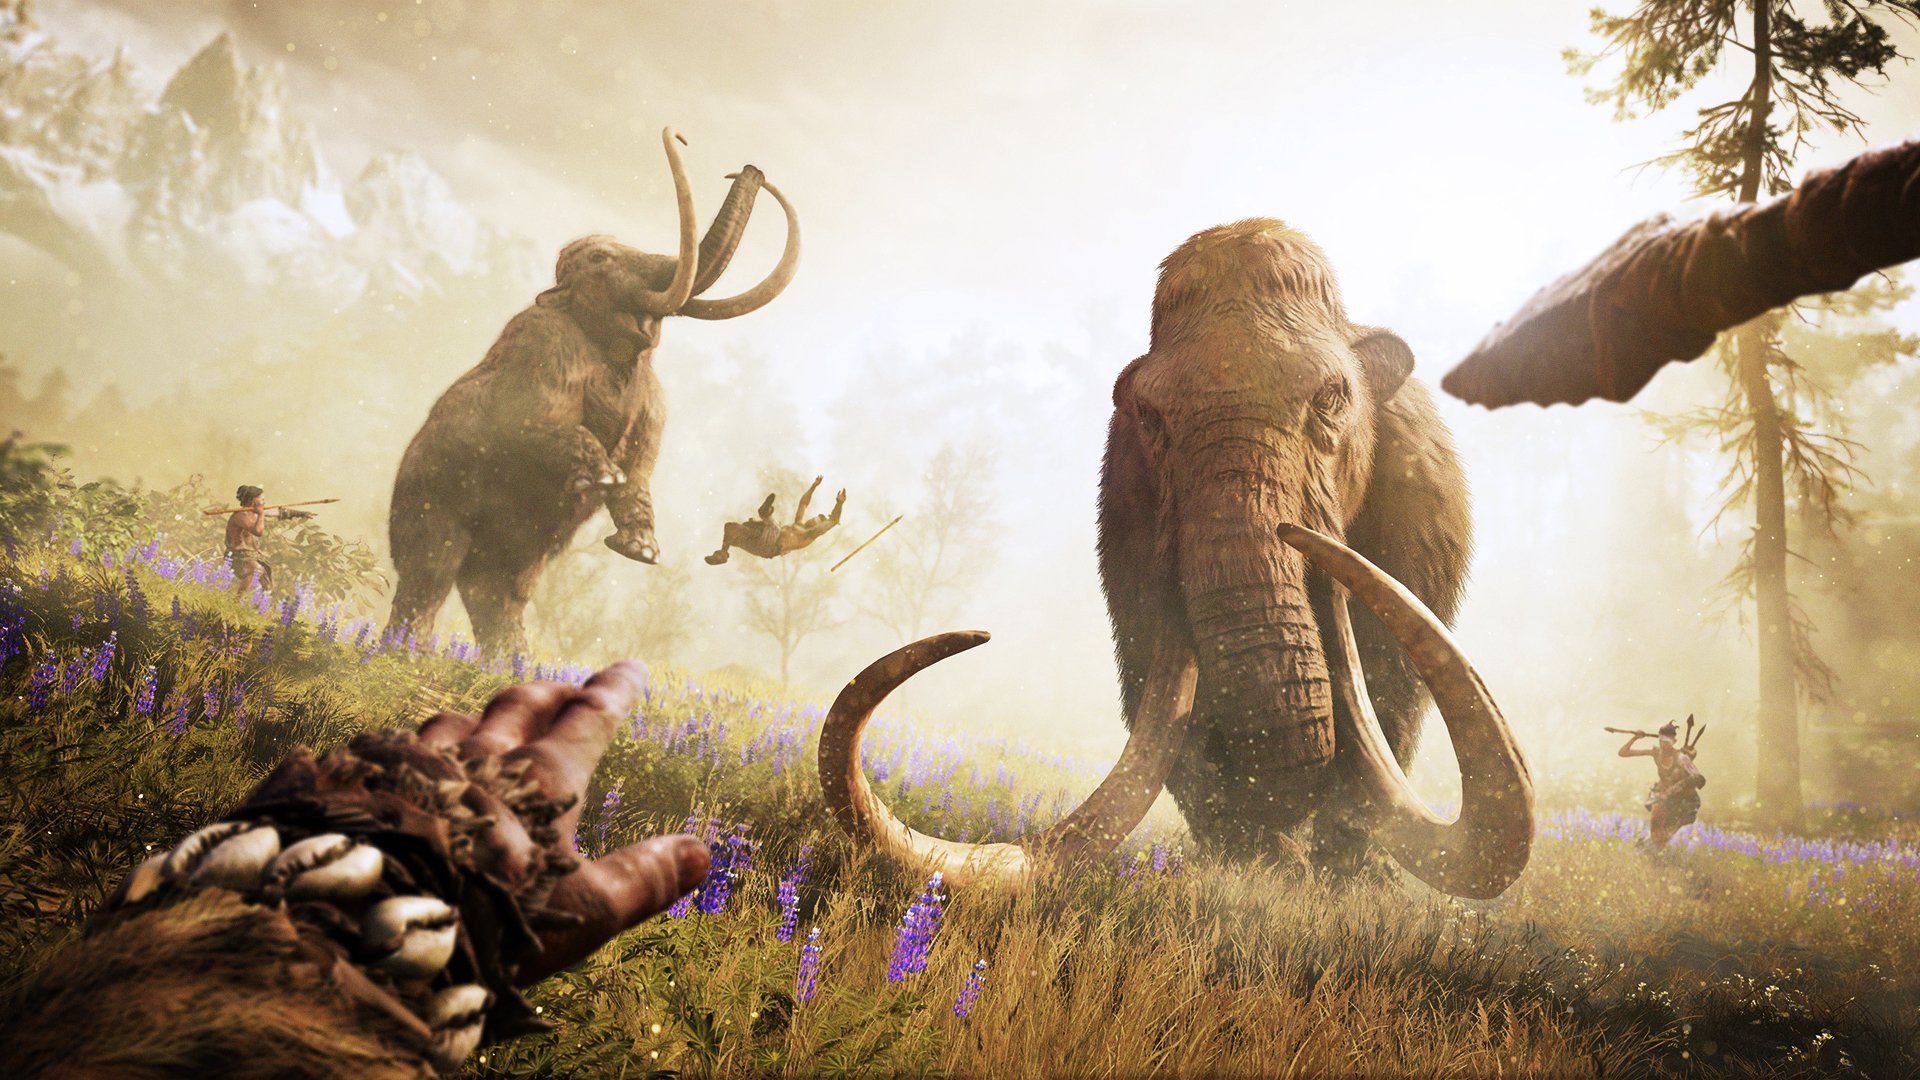 Supervivencia - Ubisoft anticipa el anuncio de una aventura de supervivencia en un mundo prehistórico Far_cry_primal-3208160